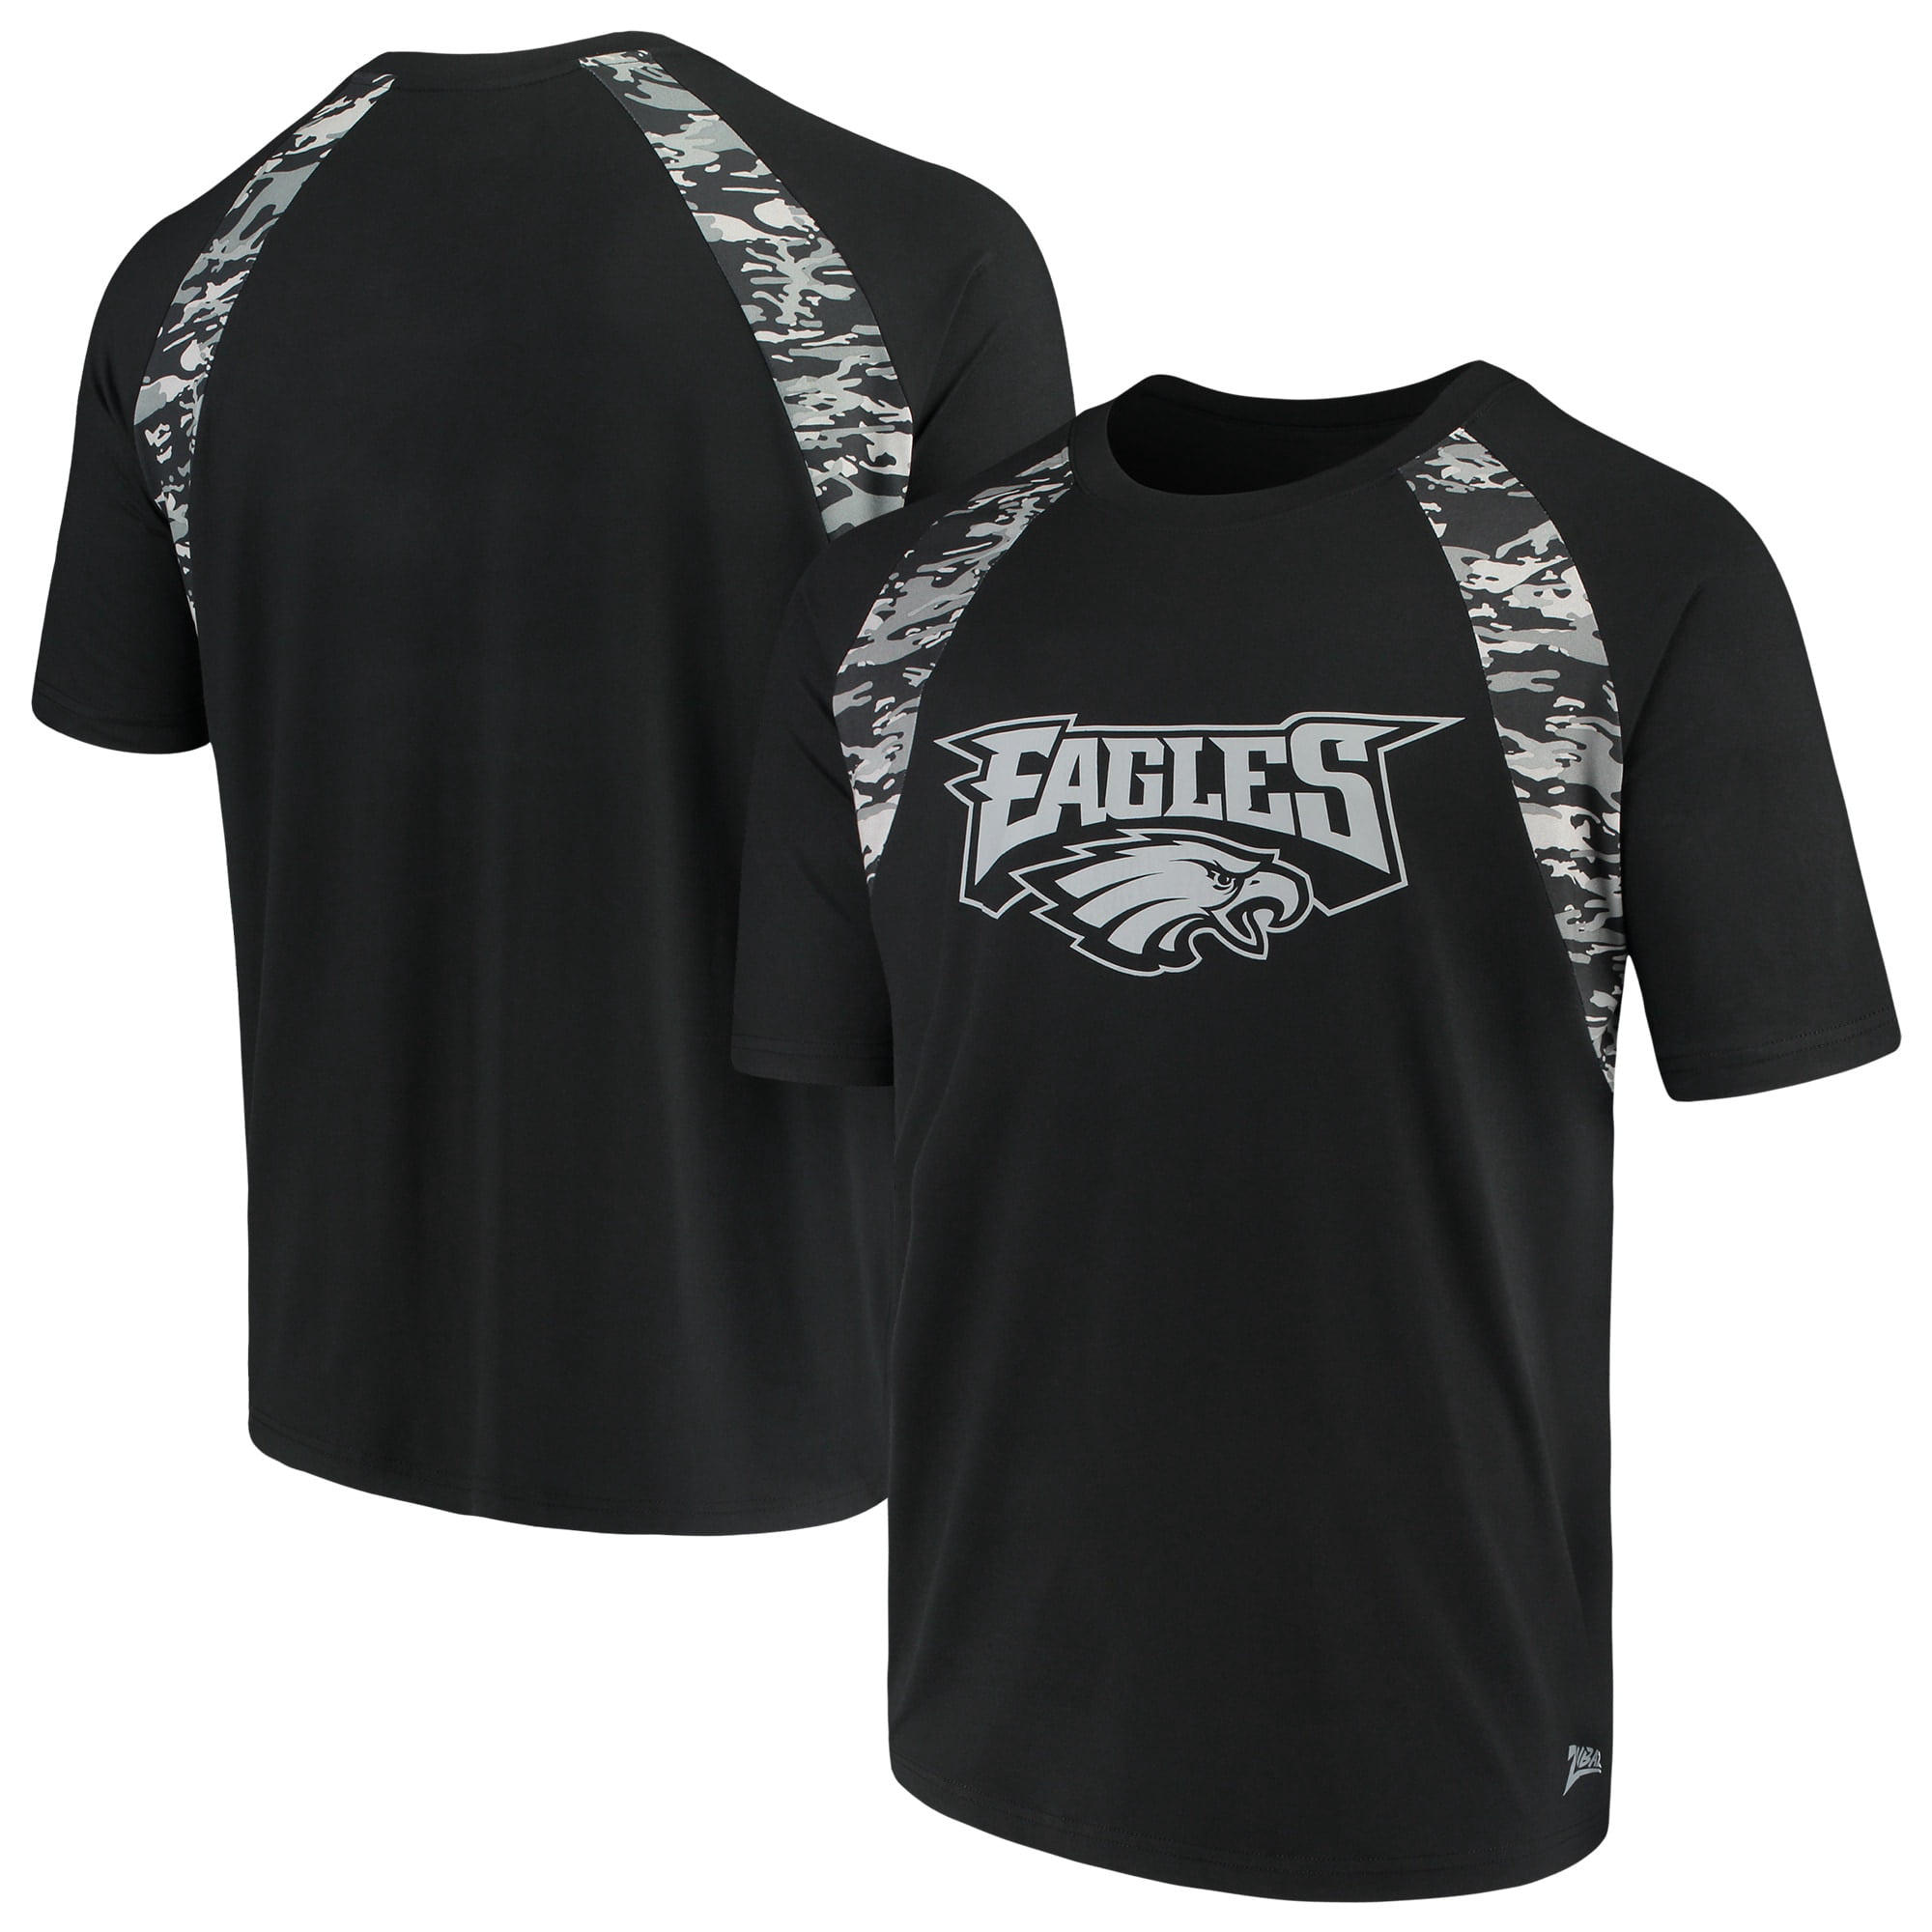 Men's Zubaz Black Philadelphia Eagles Camo Raglan T-Shirt